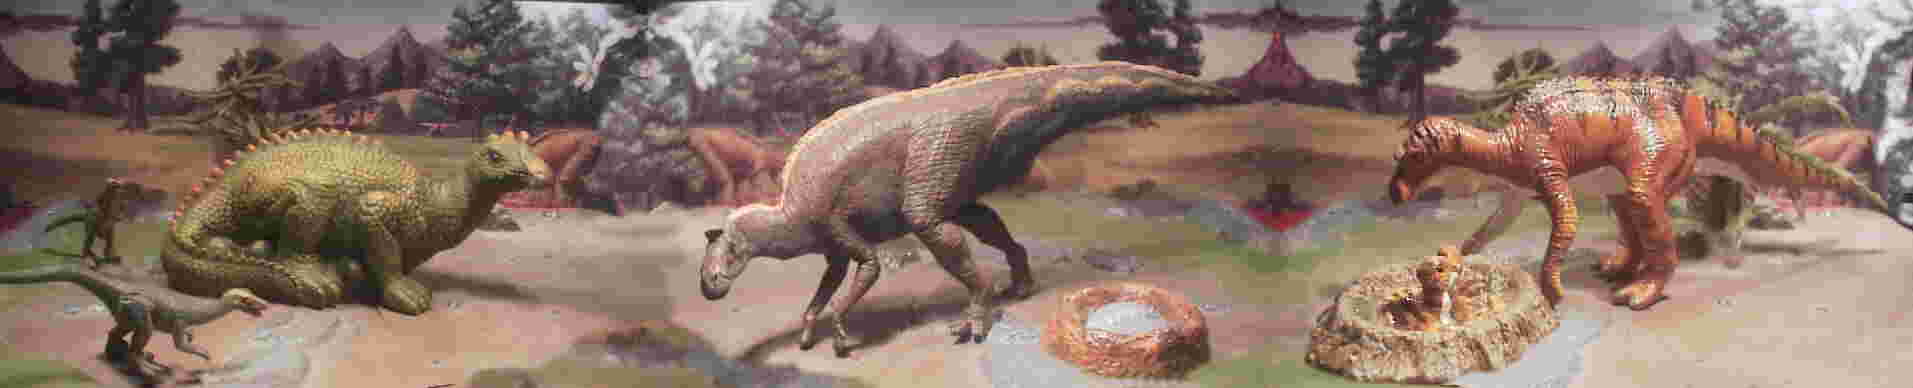 Maiasaura Troodon